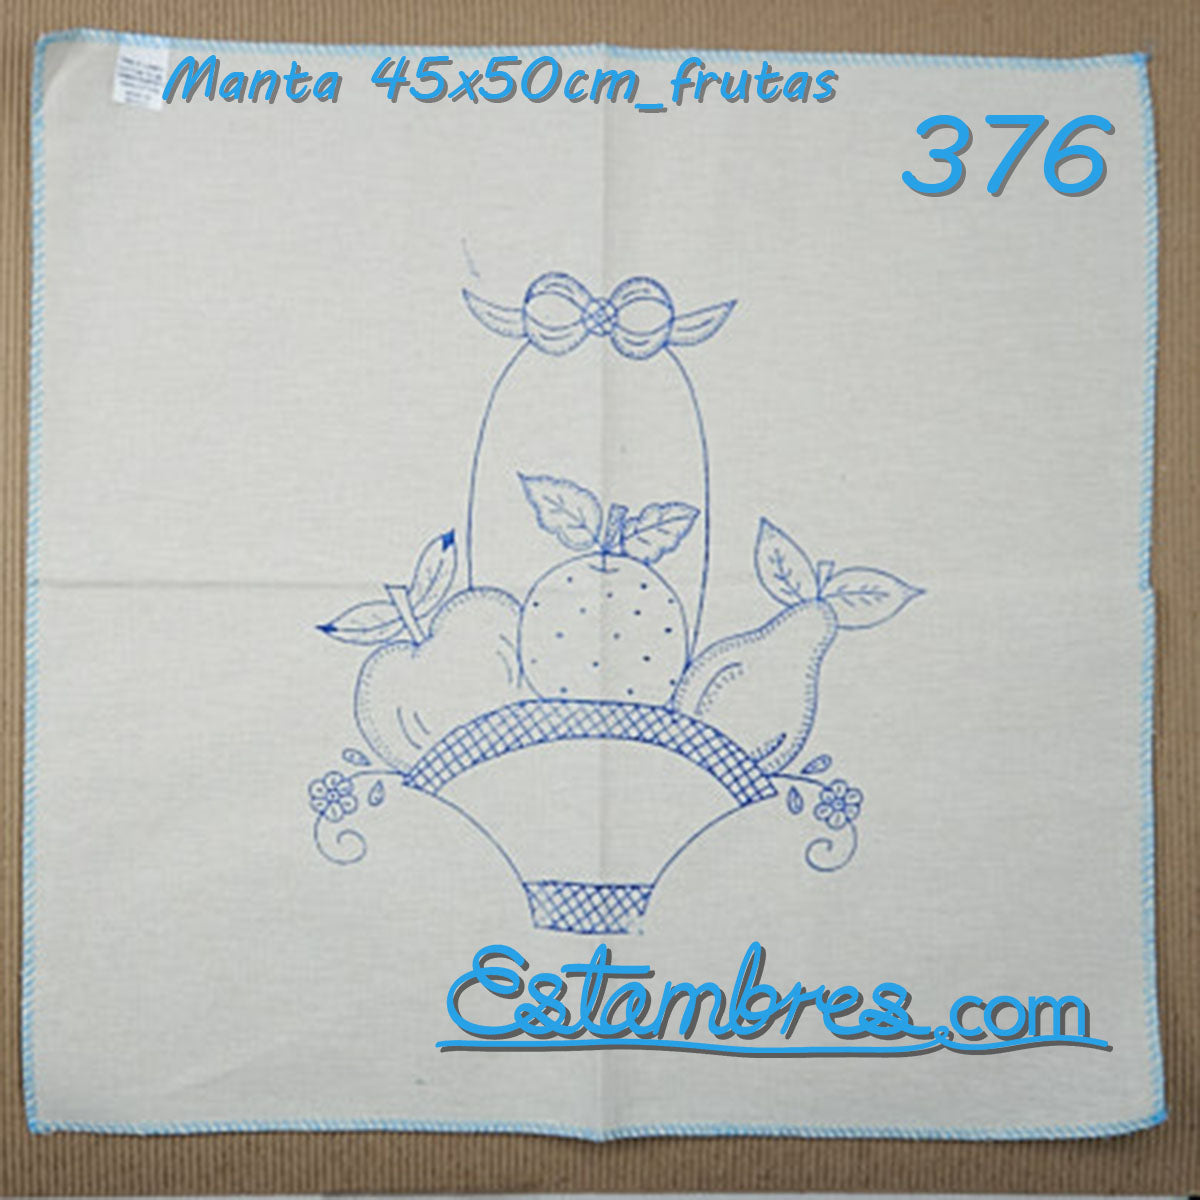 FRUTAS - Manta [45x50cm]